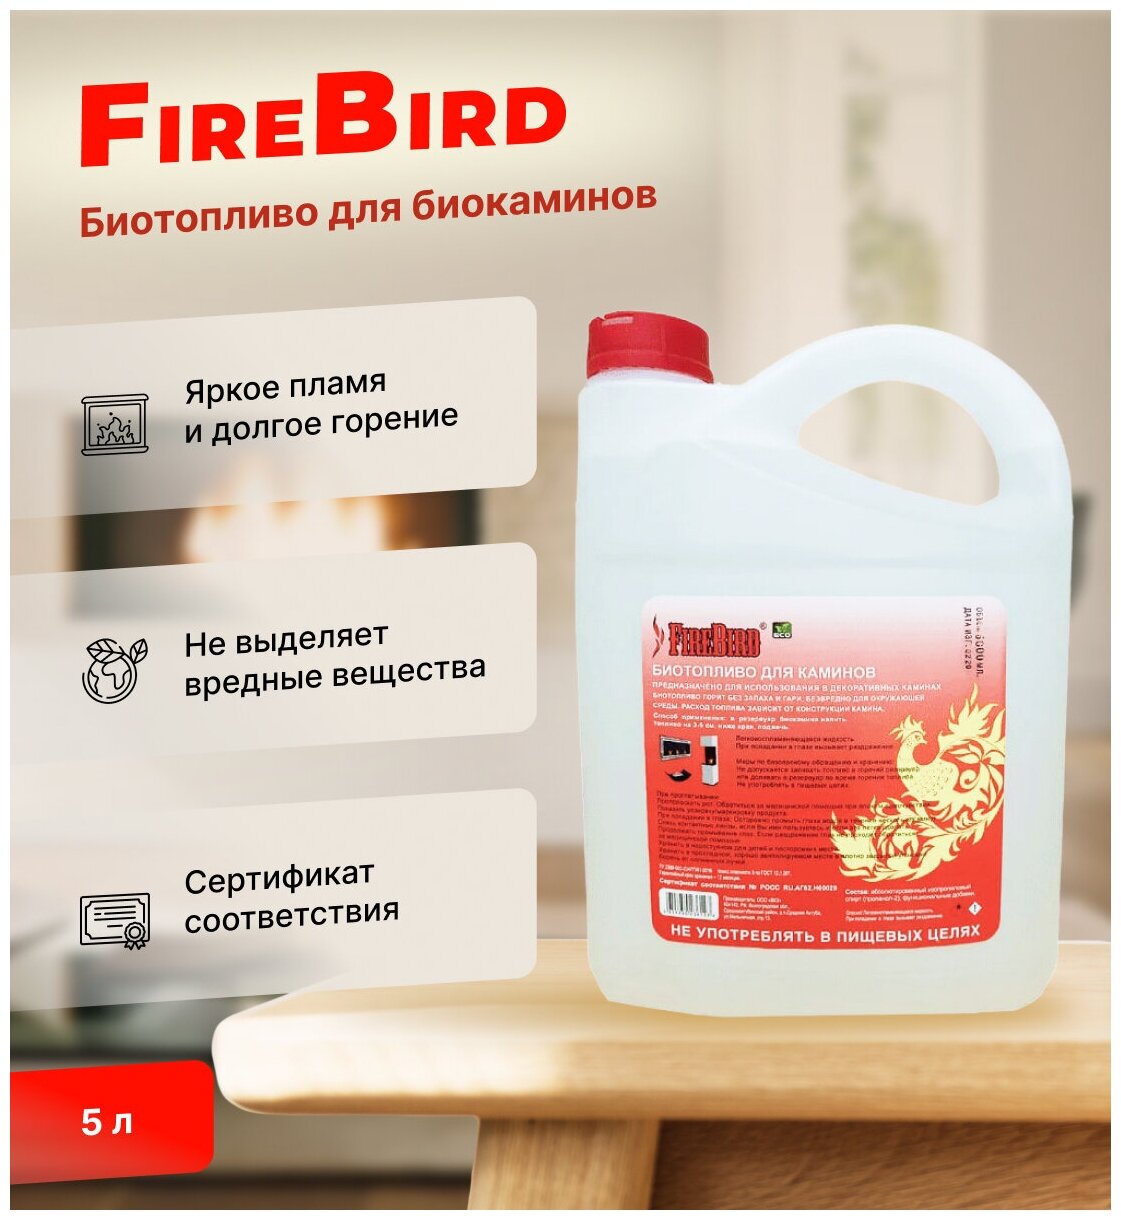 Биотопливо для биокаминов FireBird 5 литров